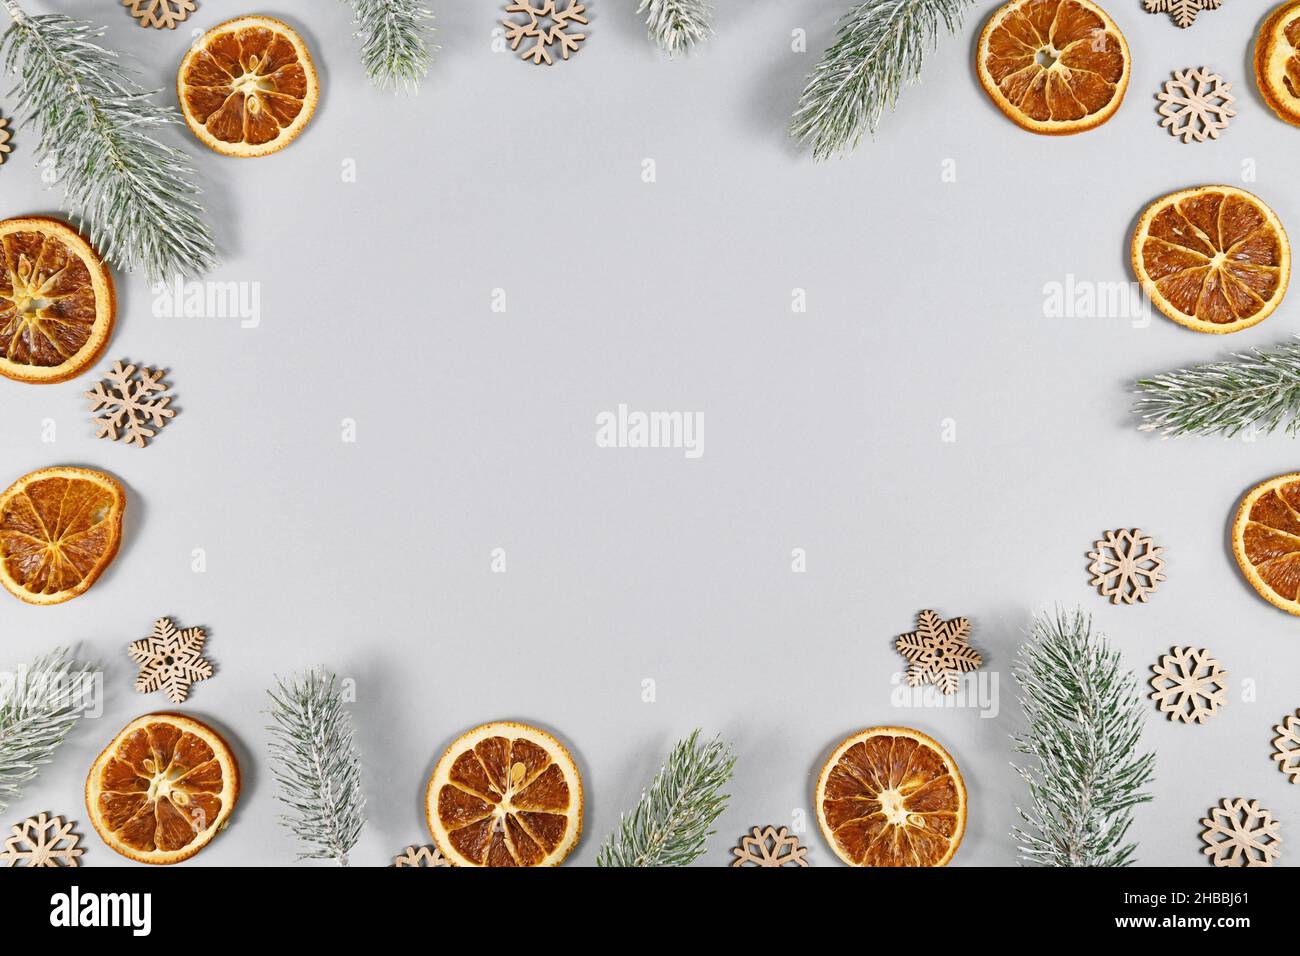 Cornice con rami di abete invernale, fette di arancio secco e fiocchi di neve su sfondo grigio con spazio copia Foto Stock